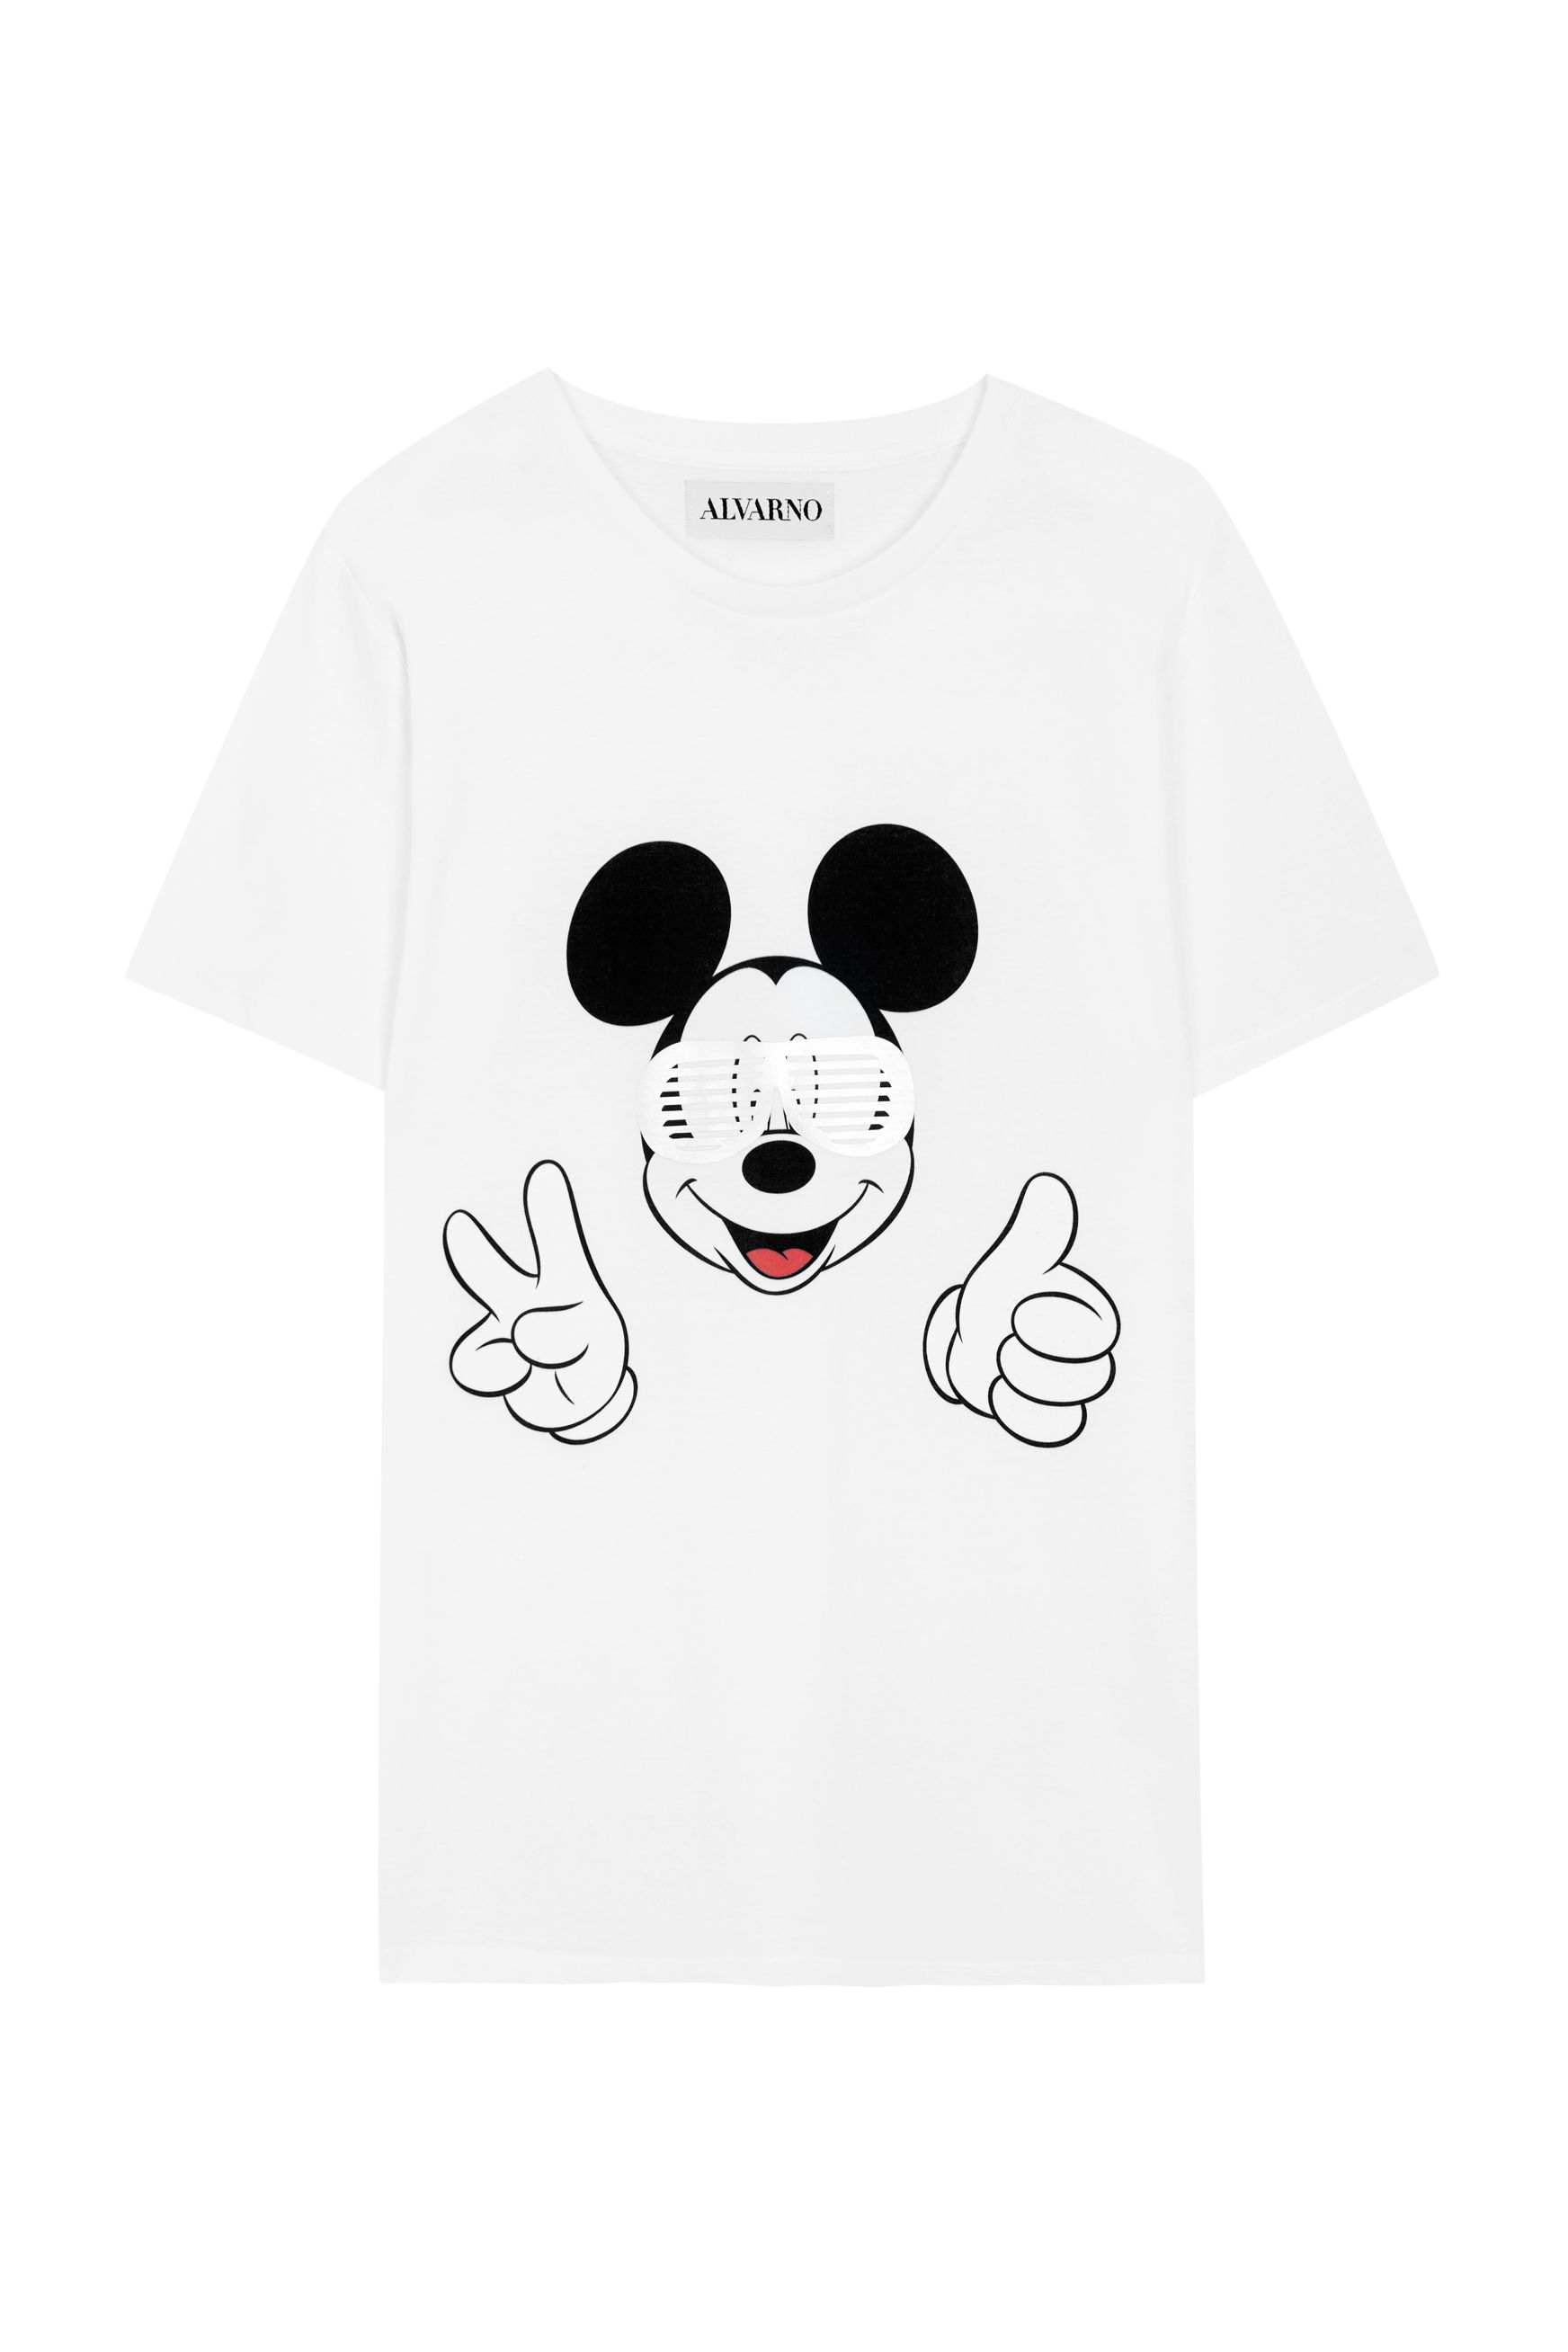 Ardiente arma tos Alvarno diseña una camiseta de Mickey para la Fundación Aladina